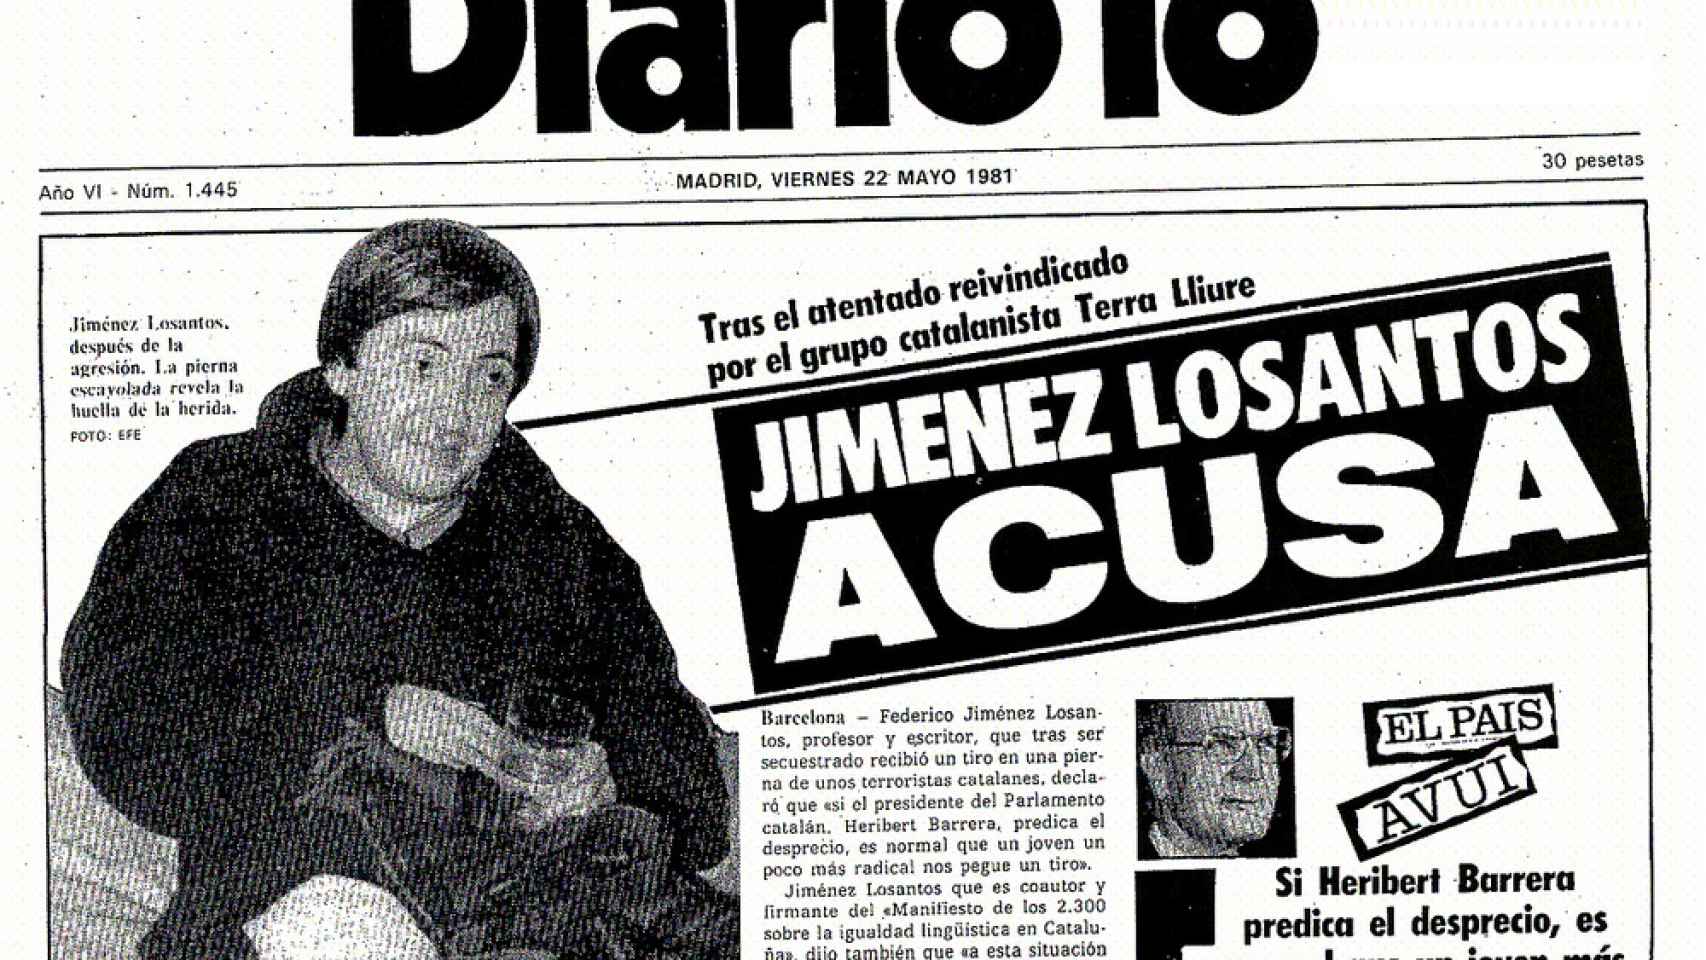 Portada de Diario 16 con Jiménez Losantos convaleciente de su atentado.